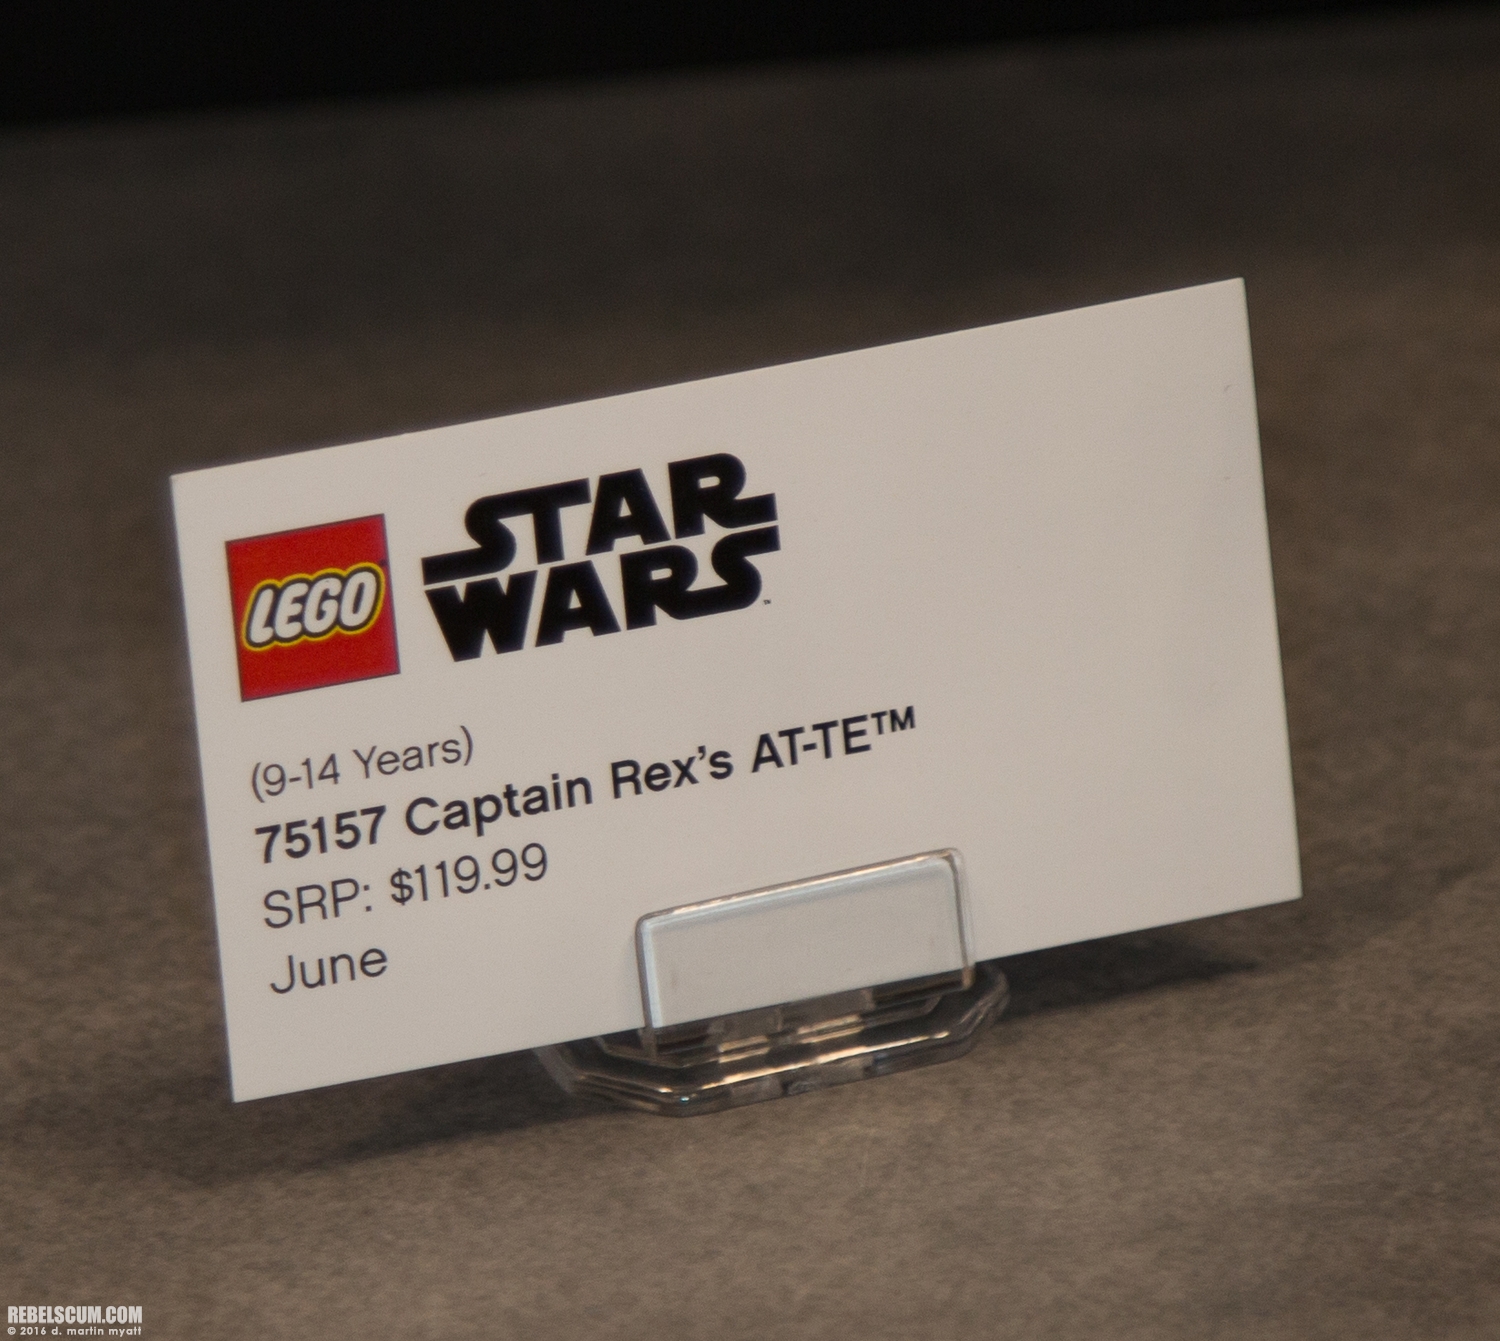 LEGO-2015-International-Toy-Fair-Star-Wars-106.jpg